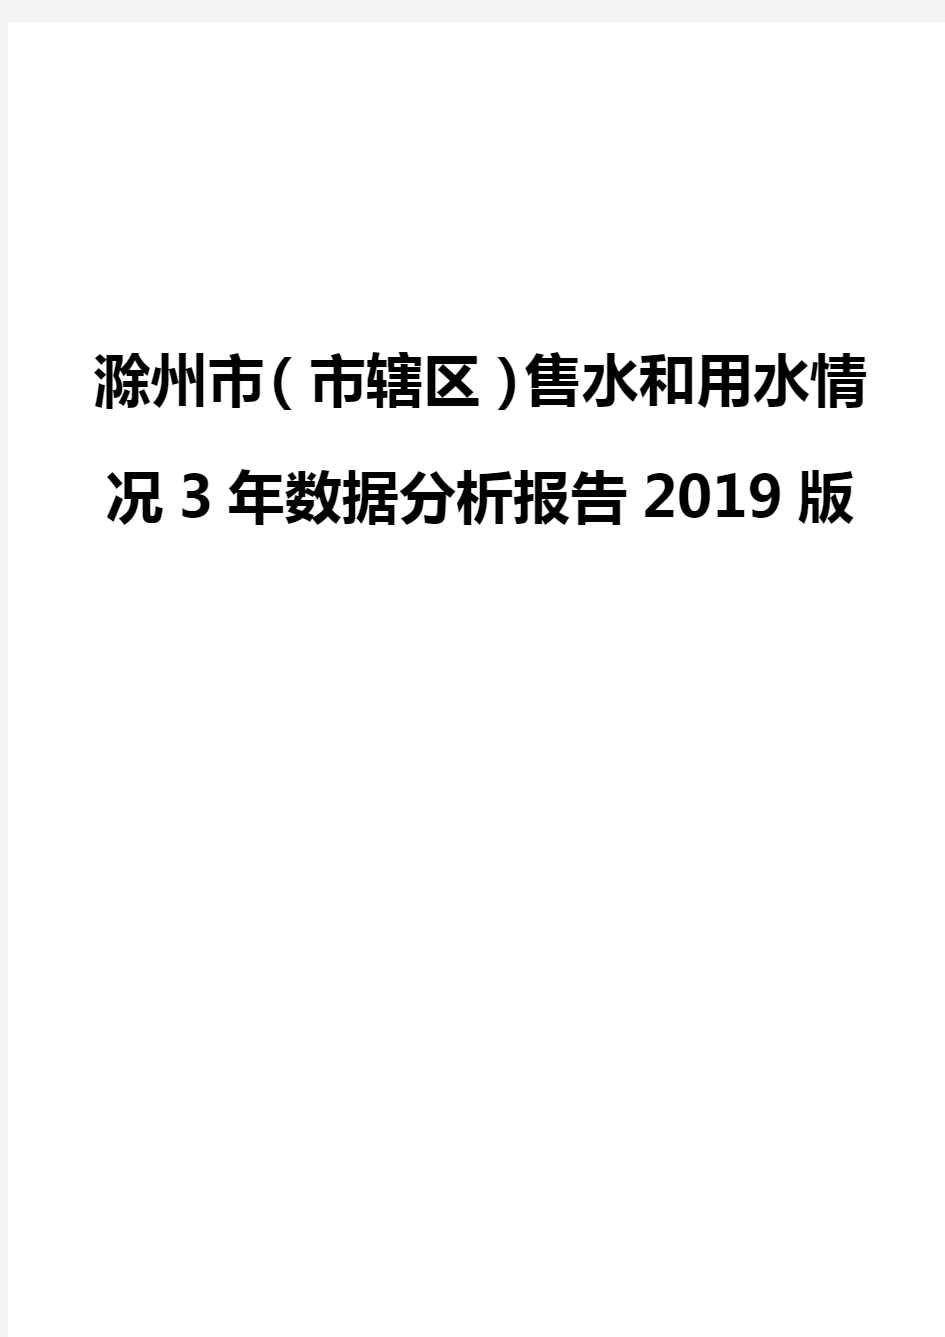 滁州市(市辖区)售水和用水情况3年数据分析报告2019版